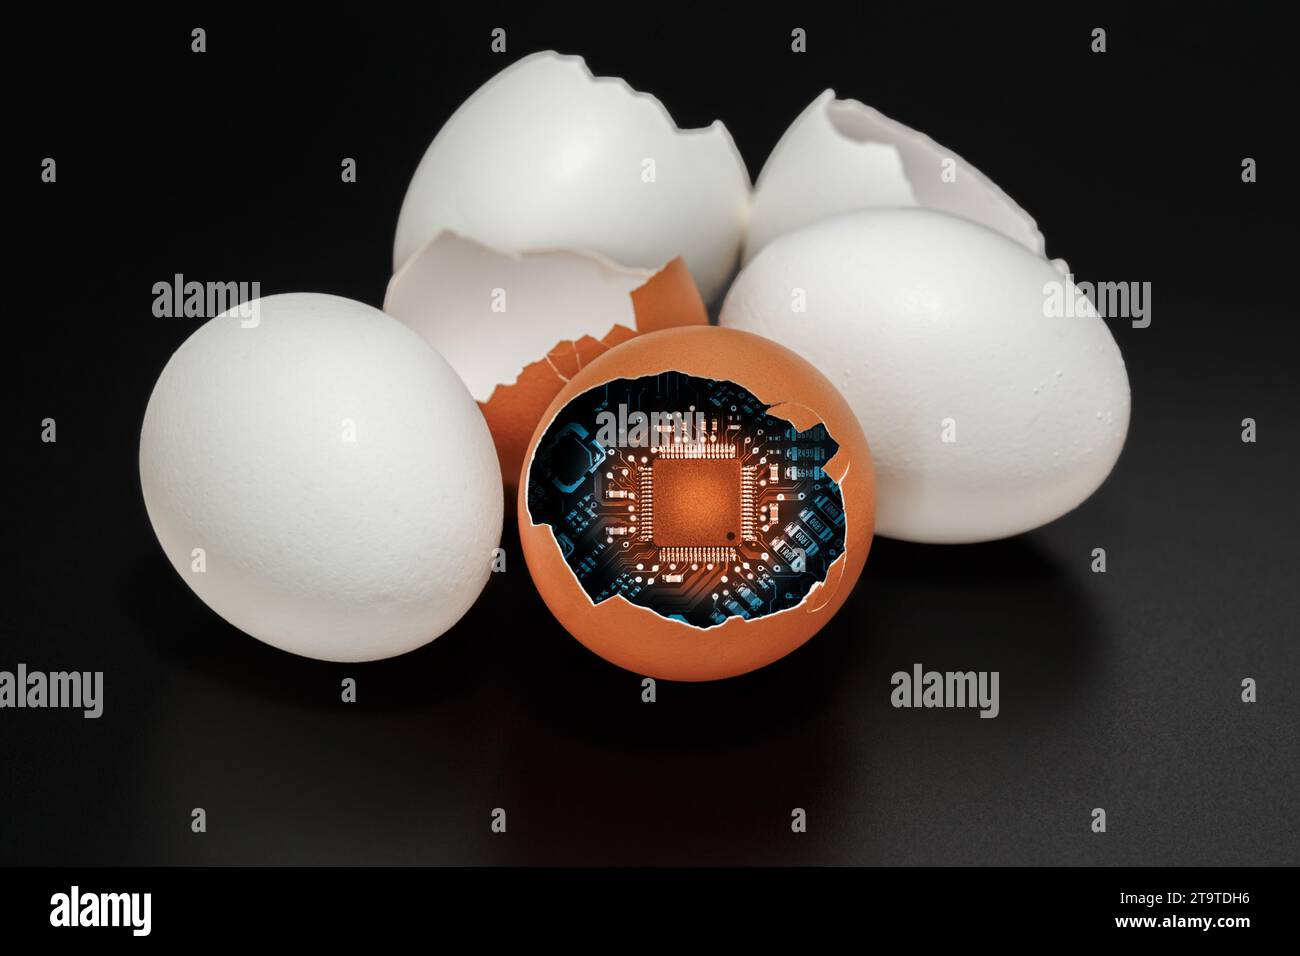 Una scheda a circuito stampato con un microprocessore all'interno di un guscio di uovo di gallina. Il concetto di ricerca e la nascita di nuove tecnologie. Foto Stock